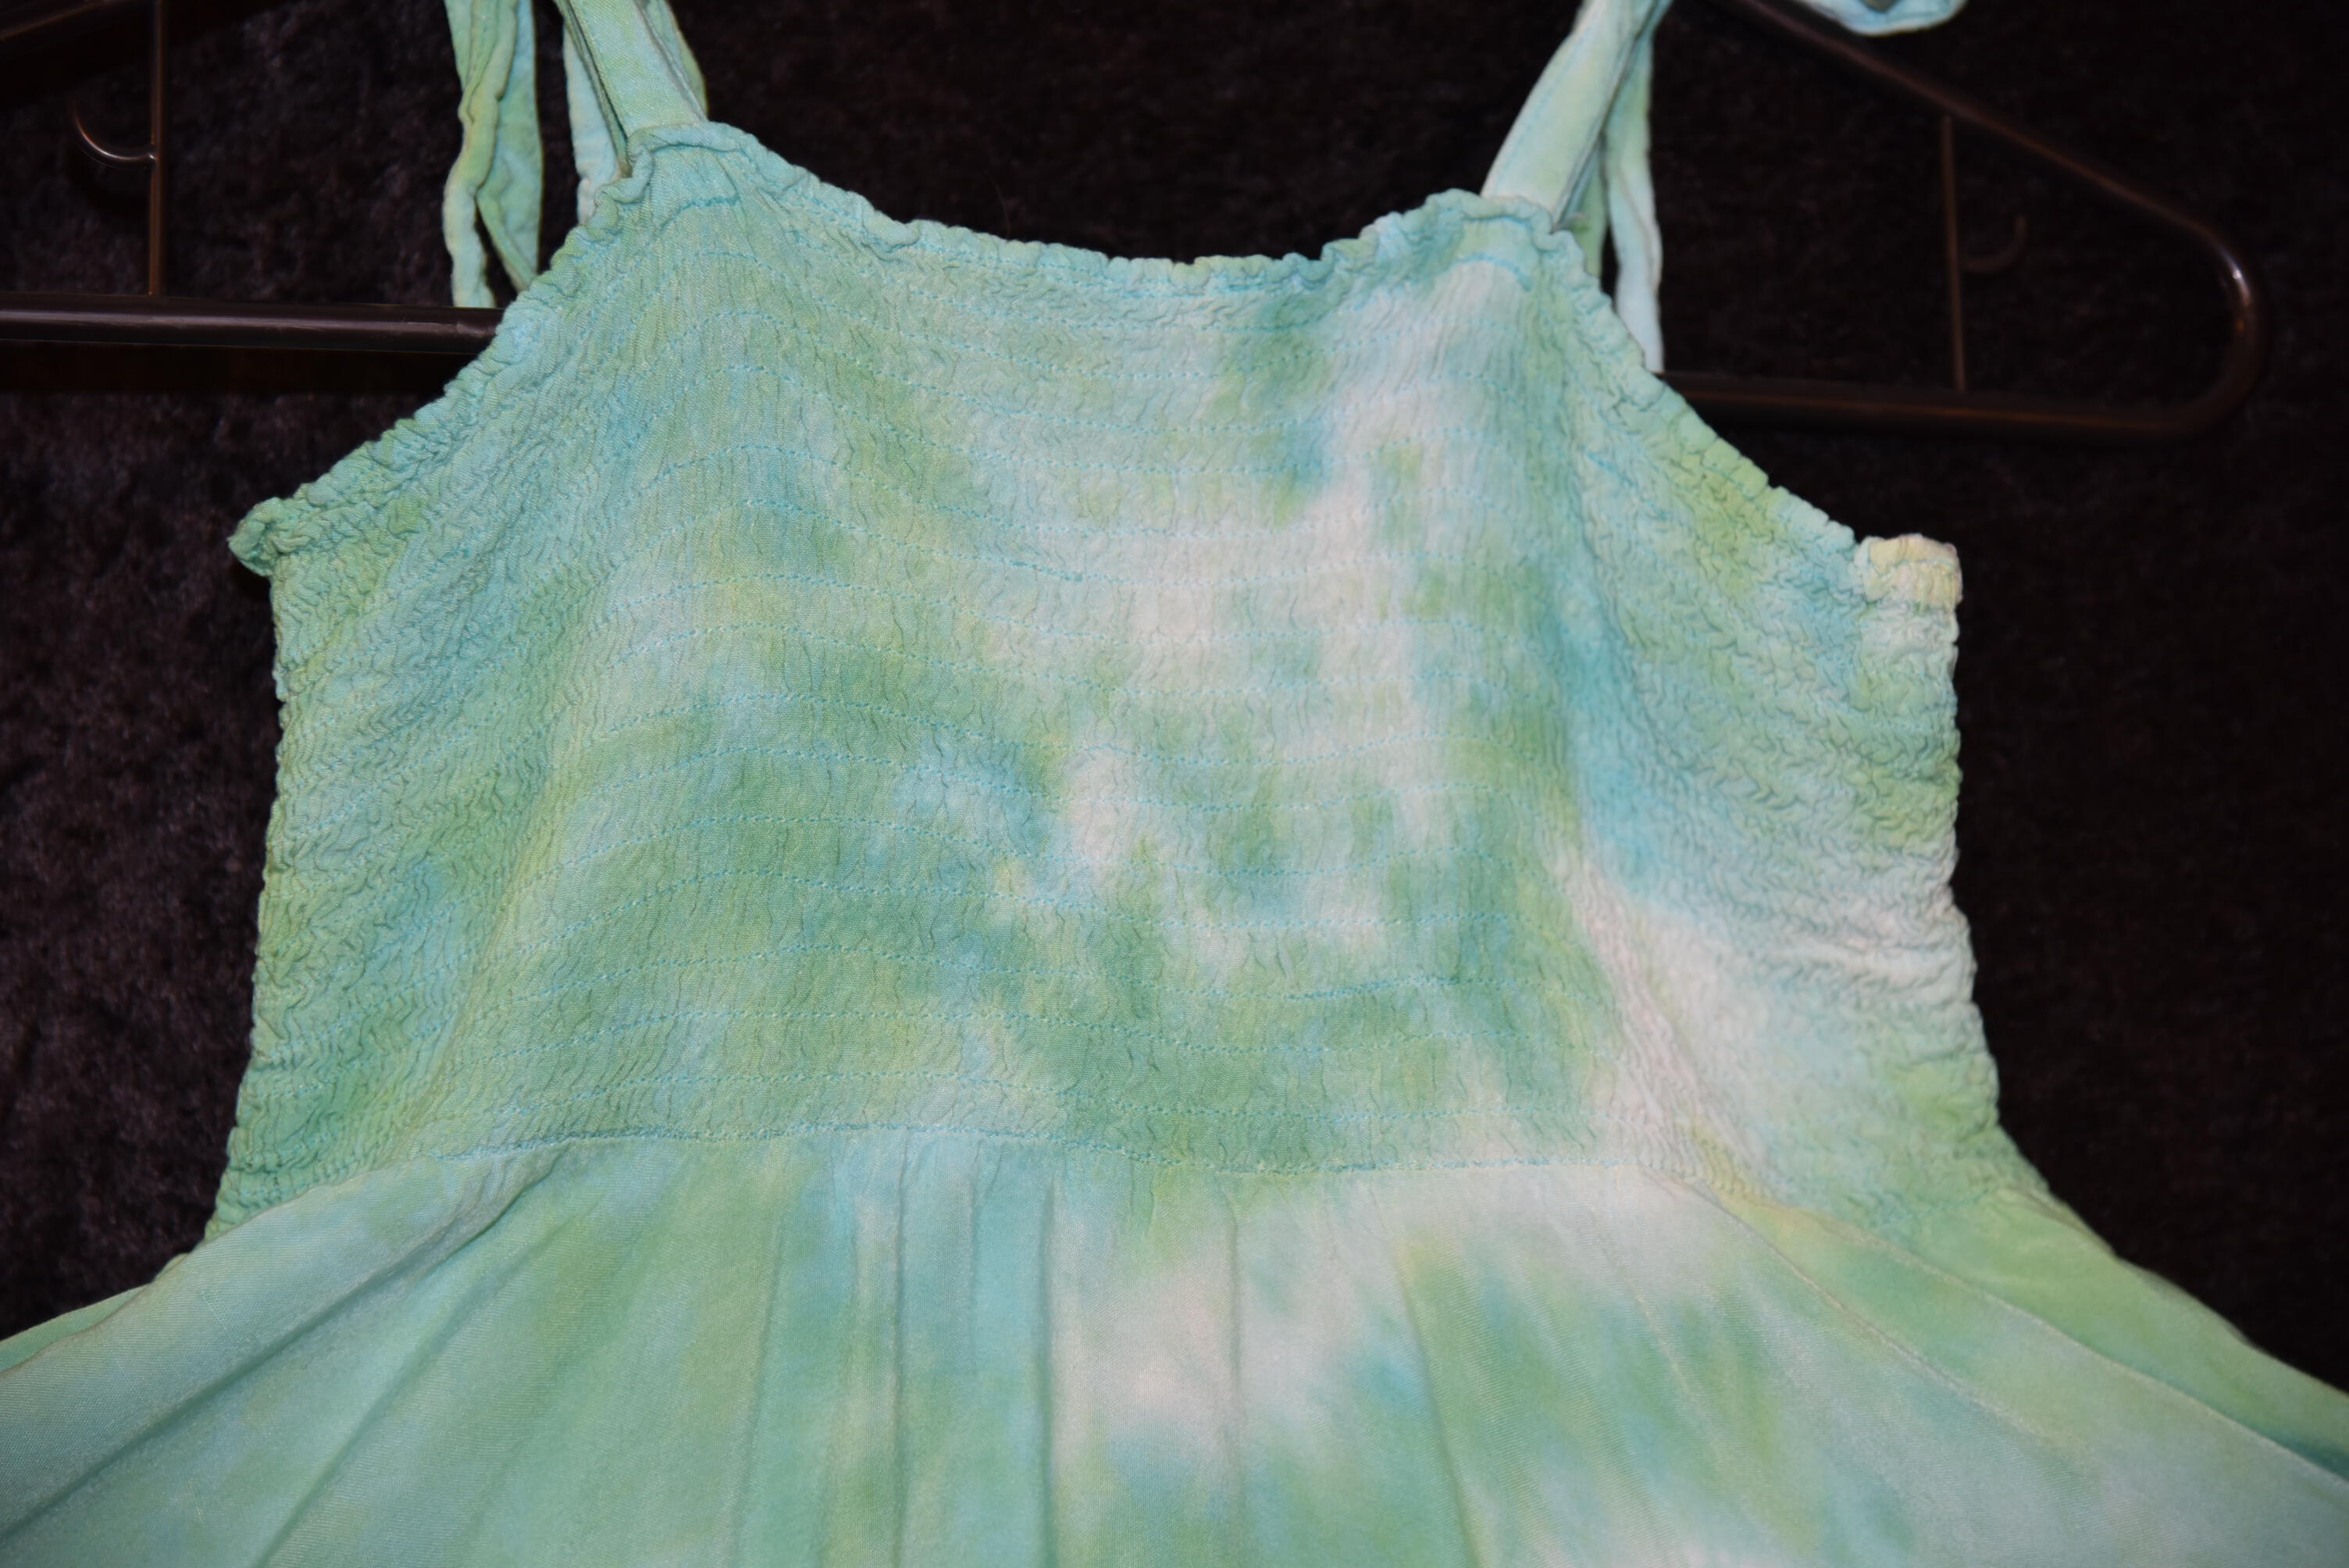 Women's Festival Skirt/Dress - Seafoam Green spirals - Small